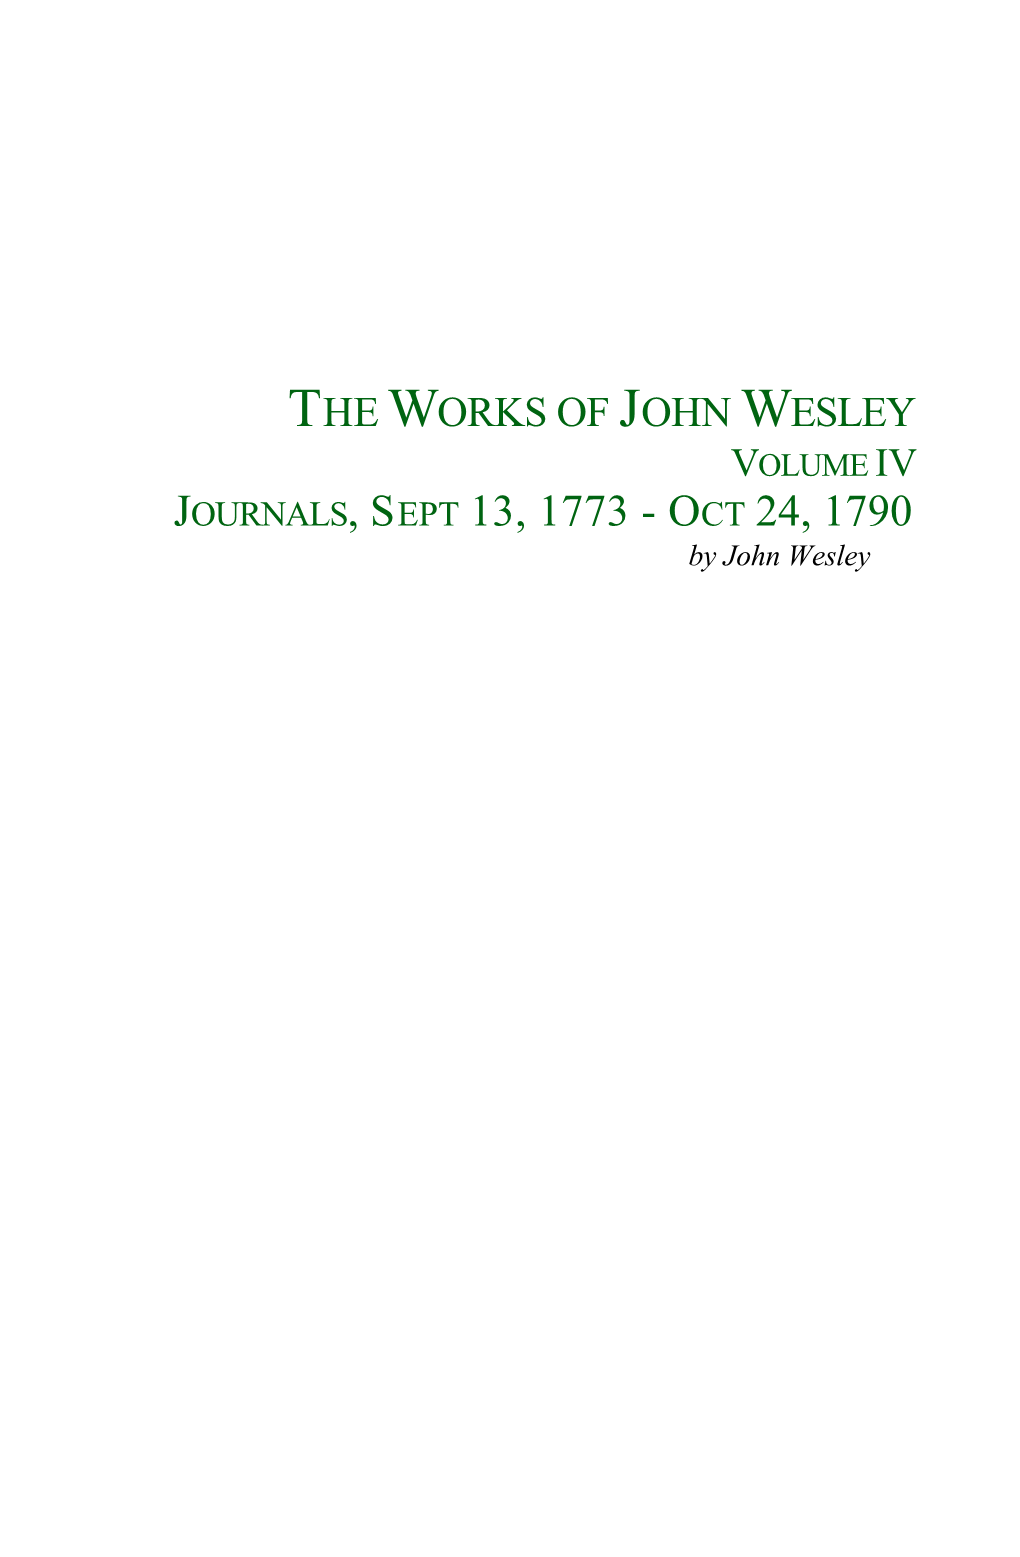 THE WORKS of JOHN WESLEY VOLUME IV JOURNALS, SEPT 13, 1773 - OCT 24, 1790 by John Wesley 2